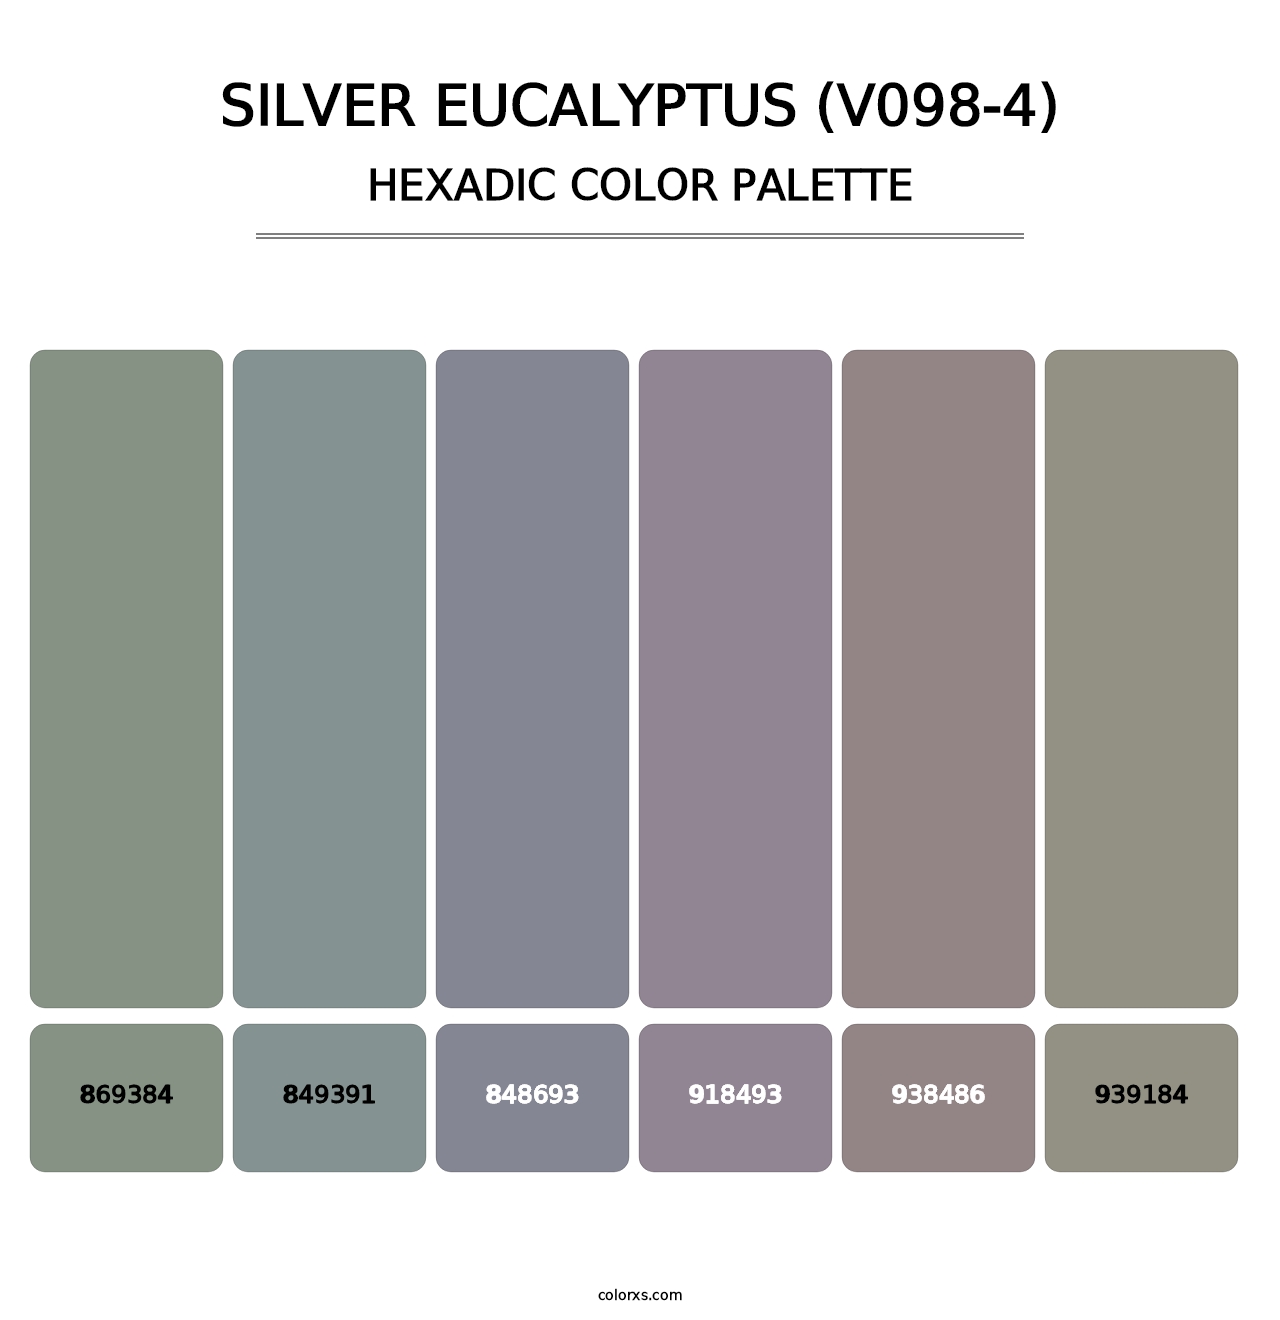 Silver Eucalyptus (V098-4) - Hexadic Color Palette